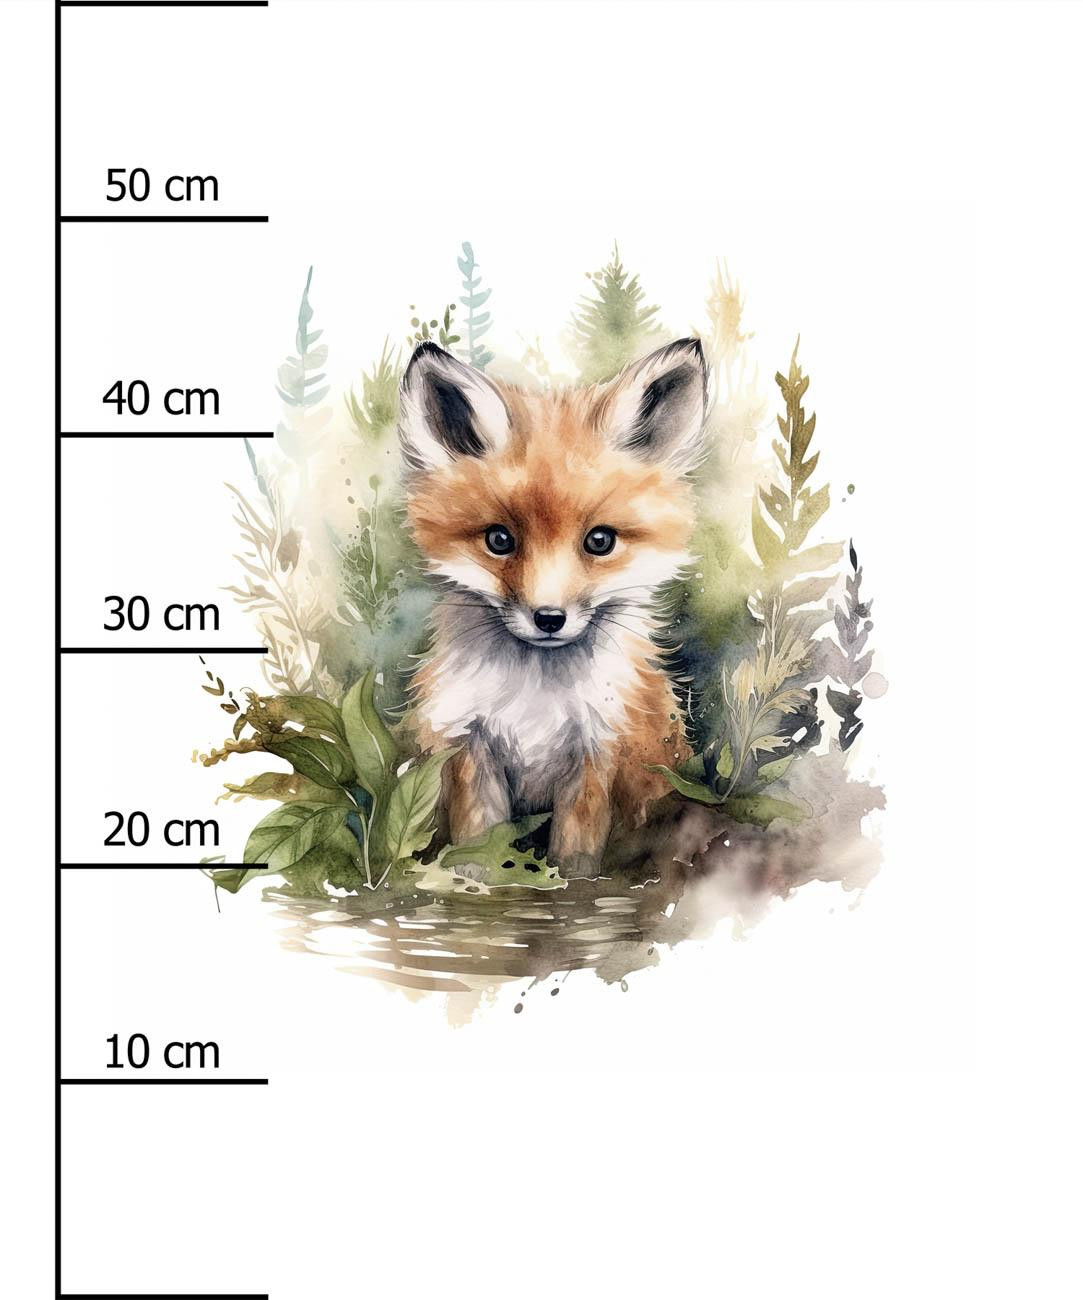 WATERCOLOR FOX - Paneel (60cm x 50cm) Hydrophober angerauter Wintersweat